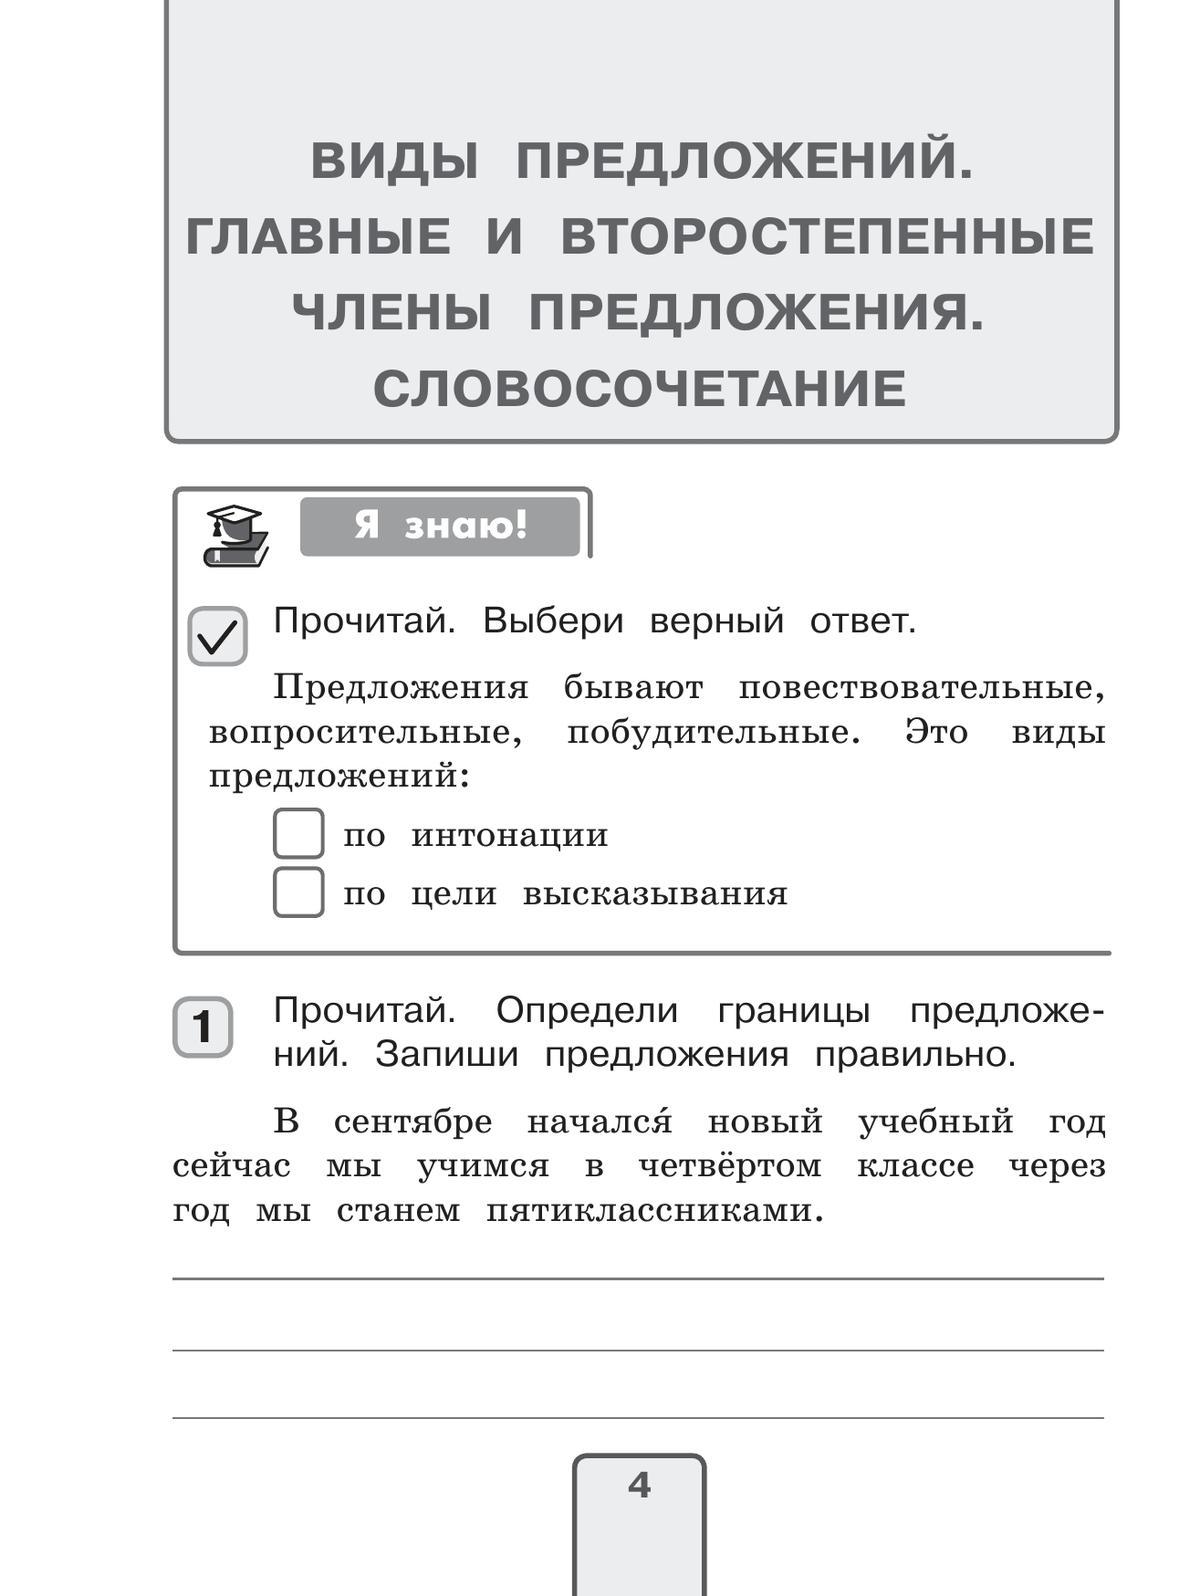 Русский язык. Проверочные работы. 4 класс 8